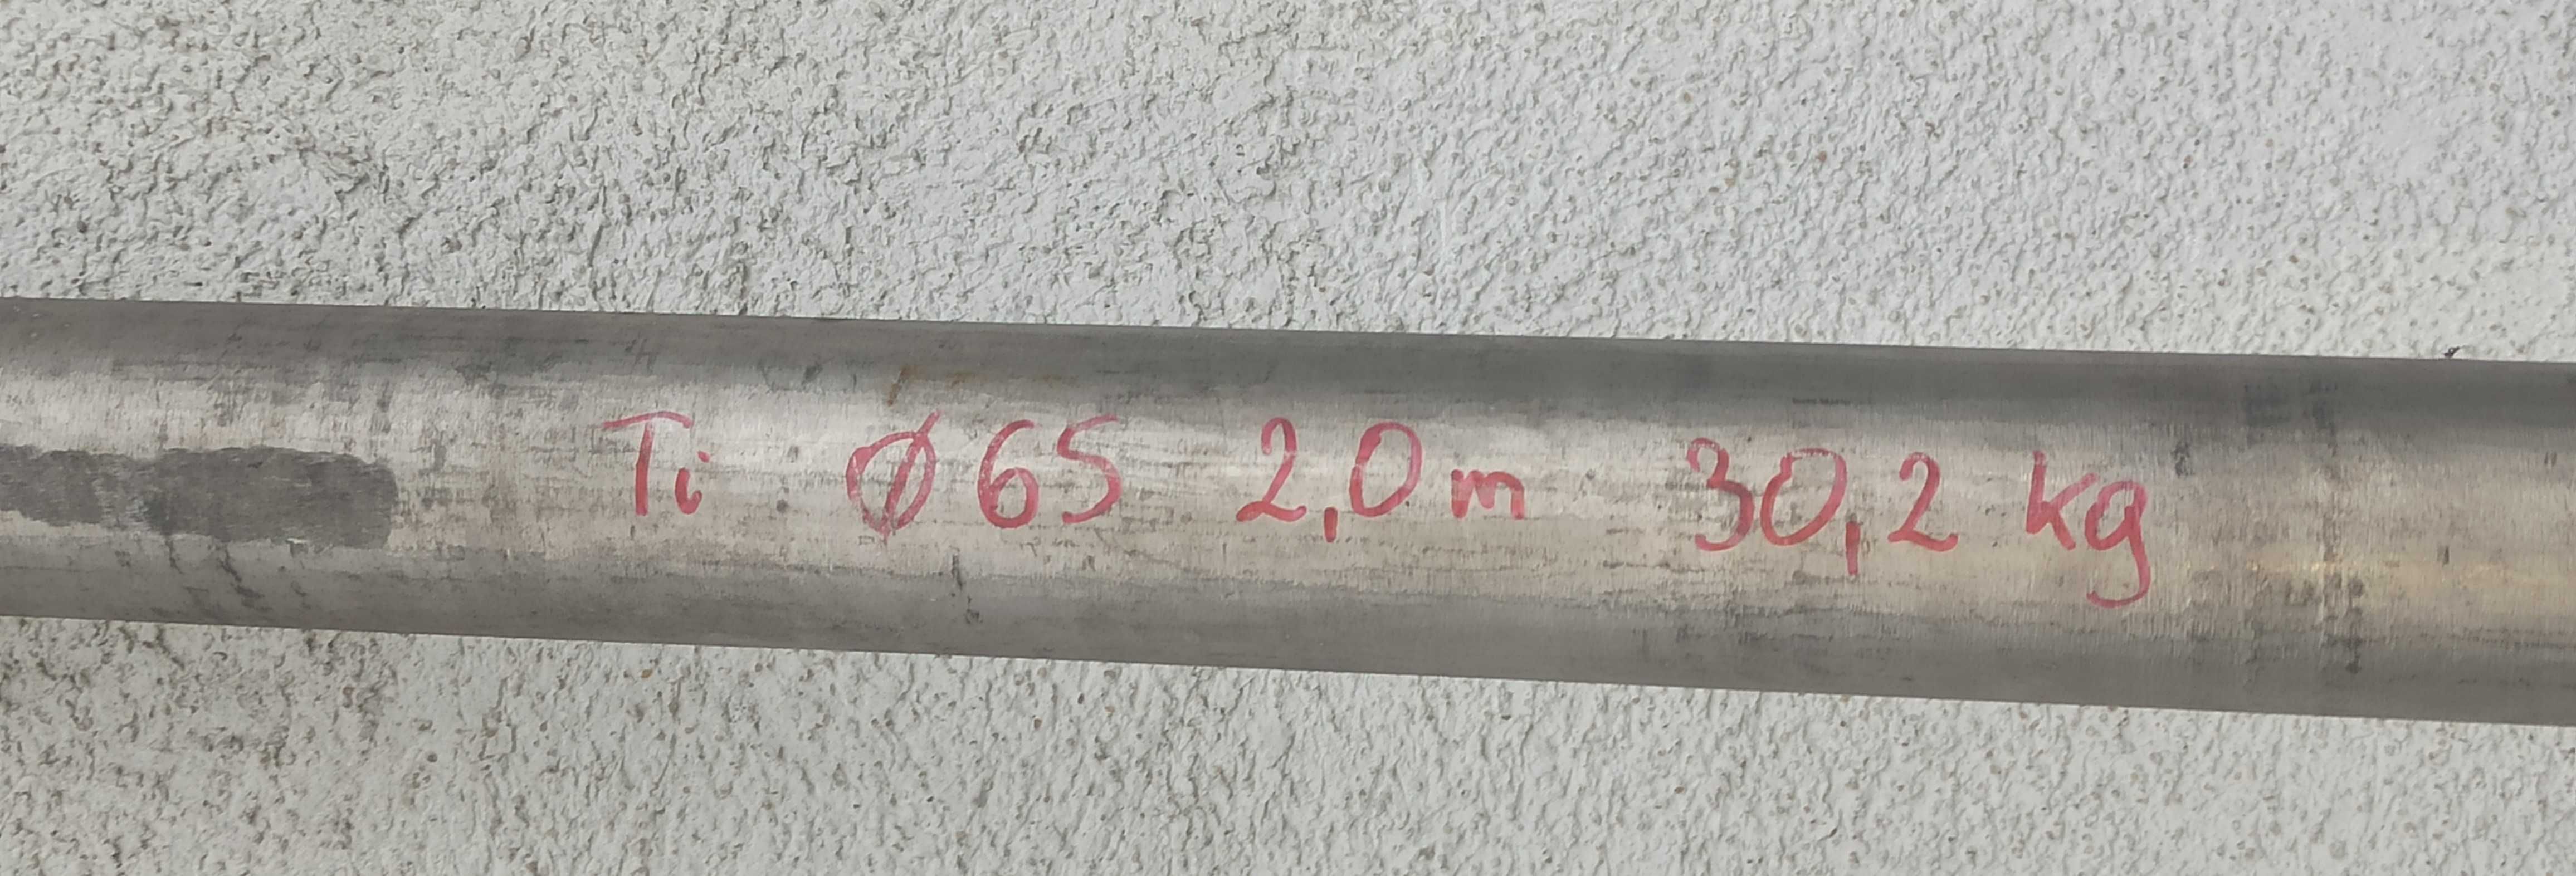 Wałek Pręt Tytan Tytanowy fi- 65mm ,  dł. 200 cm,  waga 30,2 kg